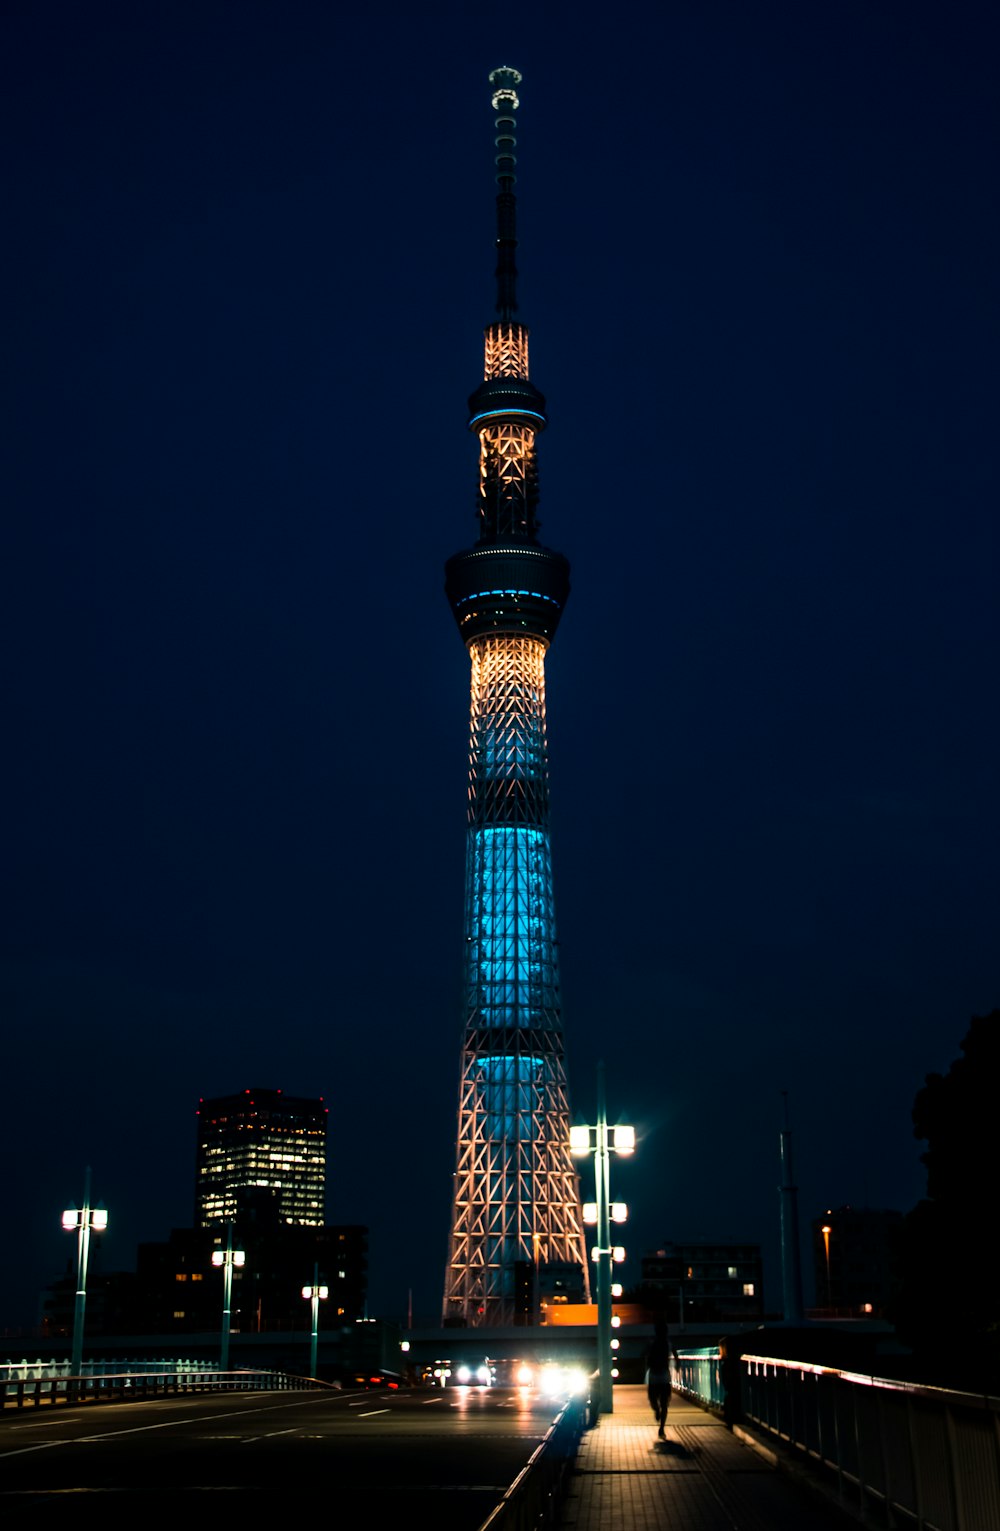 beleuchteter Turm während der Nachtzeit